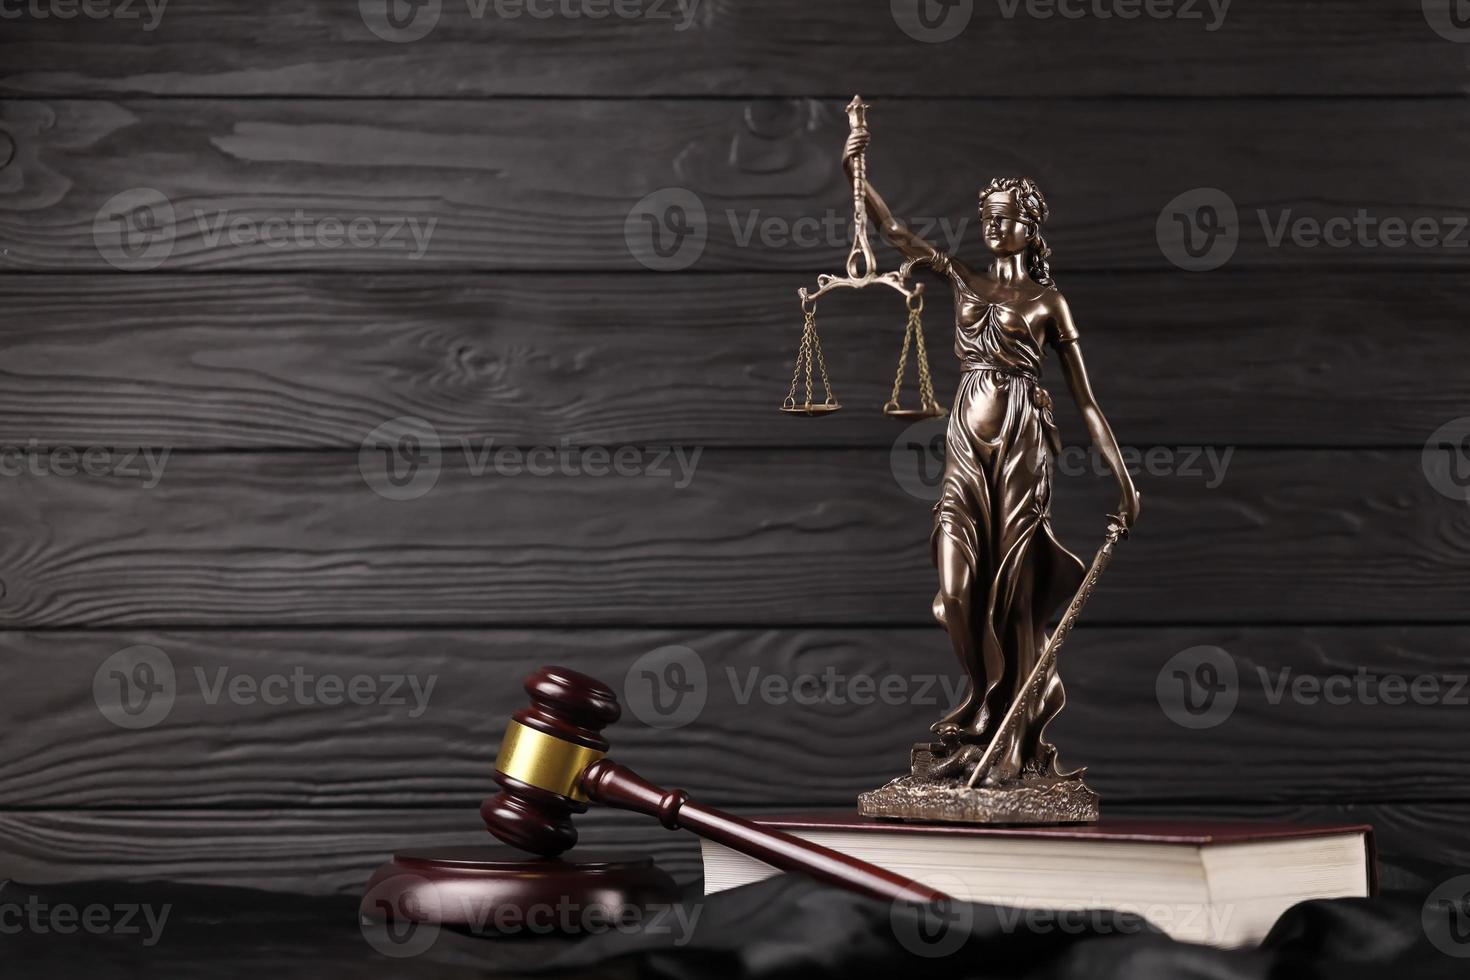 a estátua da justiça - senhora justiça ou justitia a deusa romana da justiça. estátua no livro marrom com martelo de juiz. conceito de julgamento judicial, processo judicial e trabalho de advogados foto